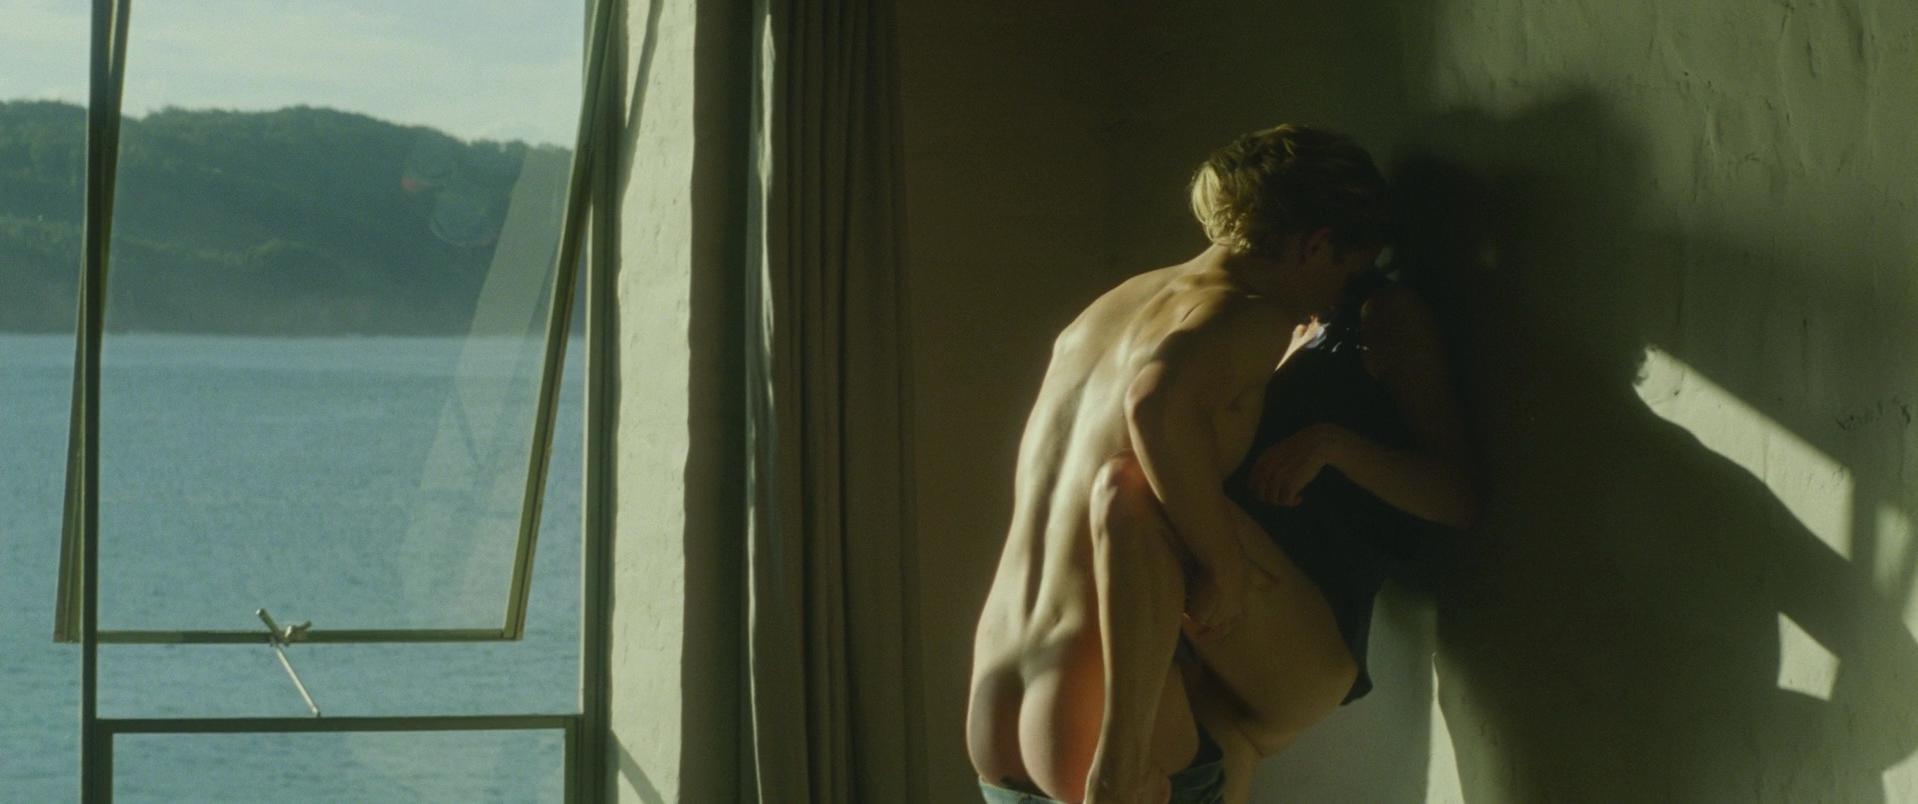 Adore film sex scenes